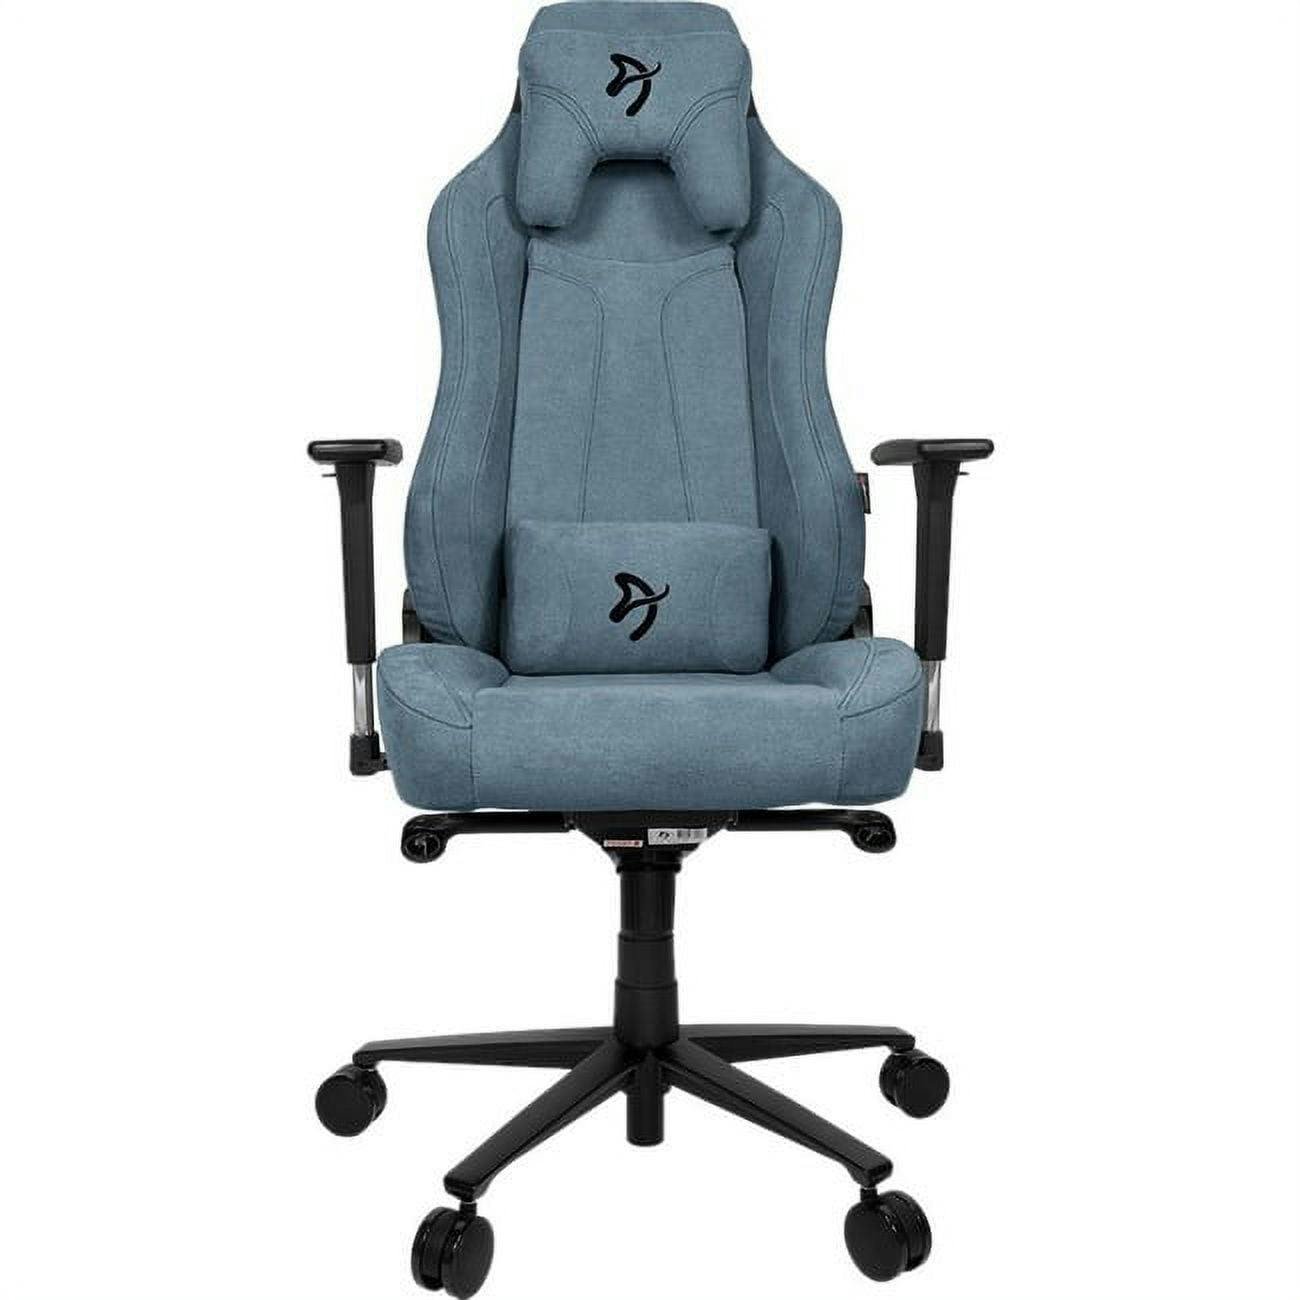 ErgoFlex Black Aluminum Ergonomic Gaming Chair with Lumbar Support